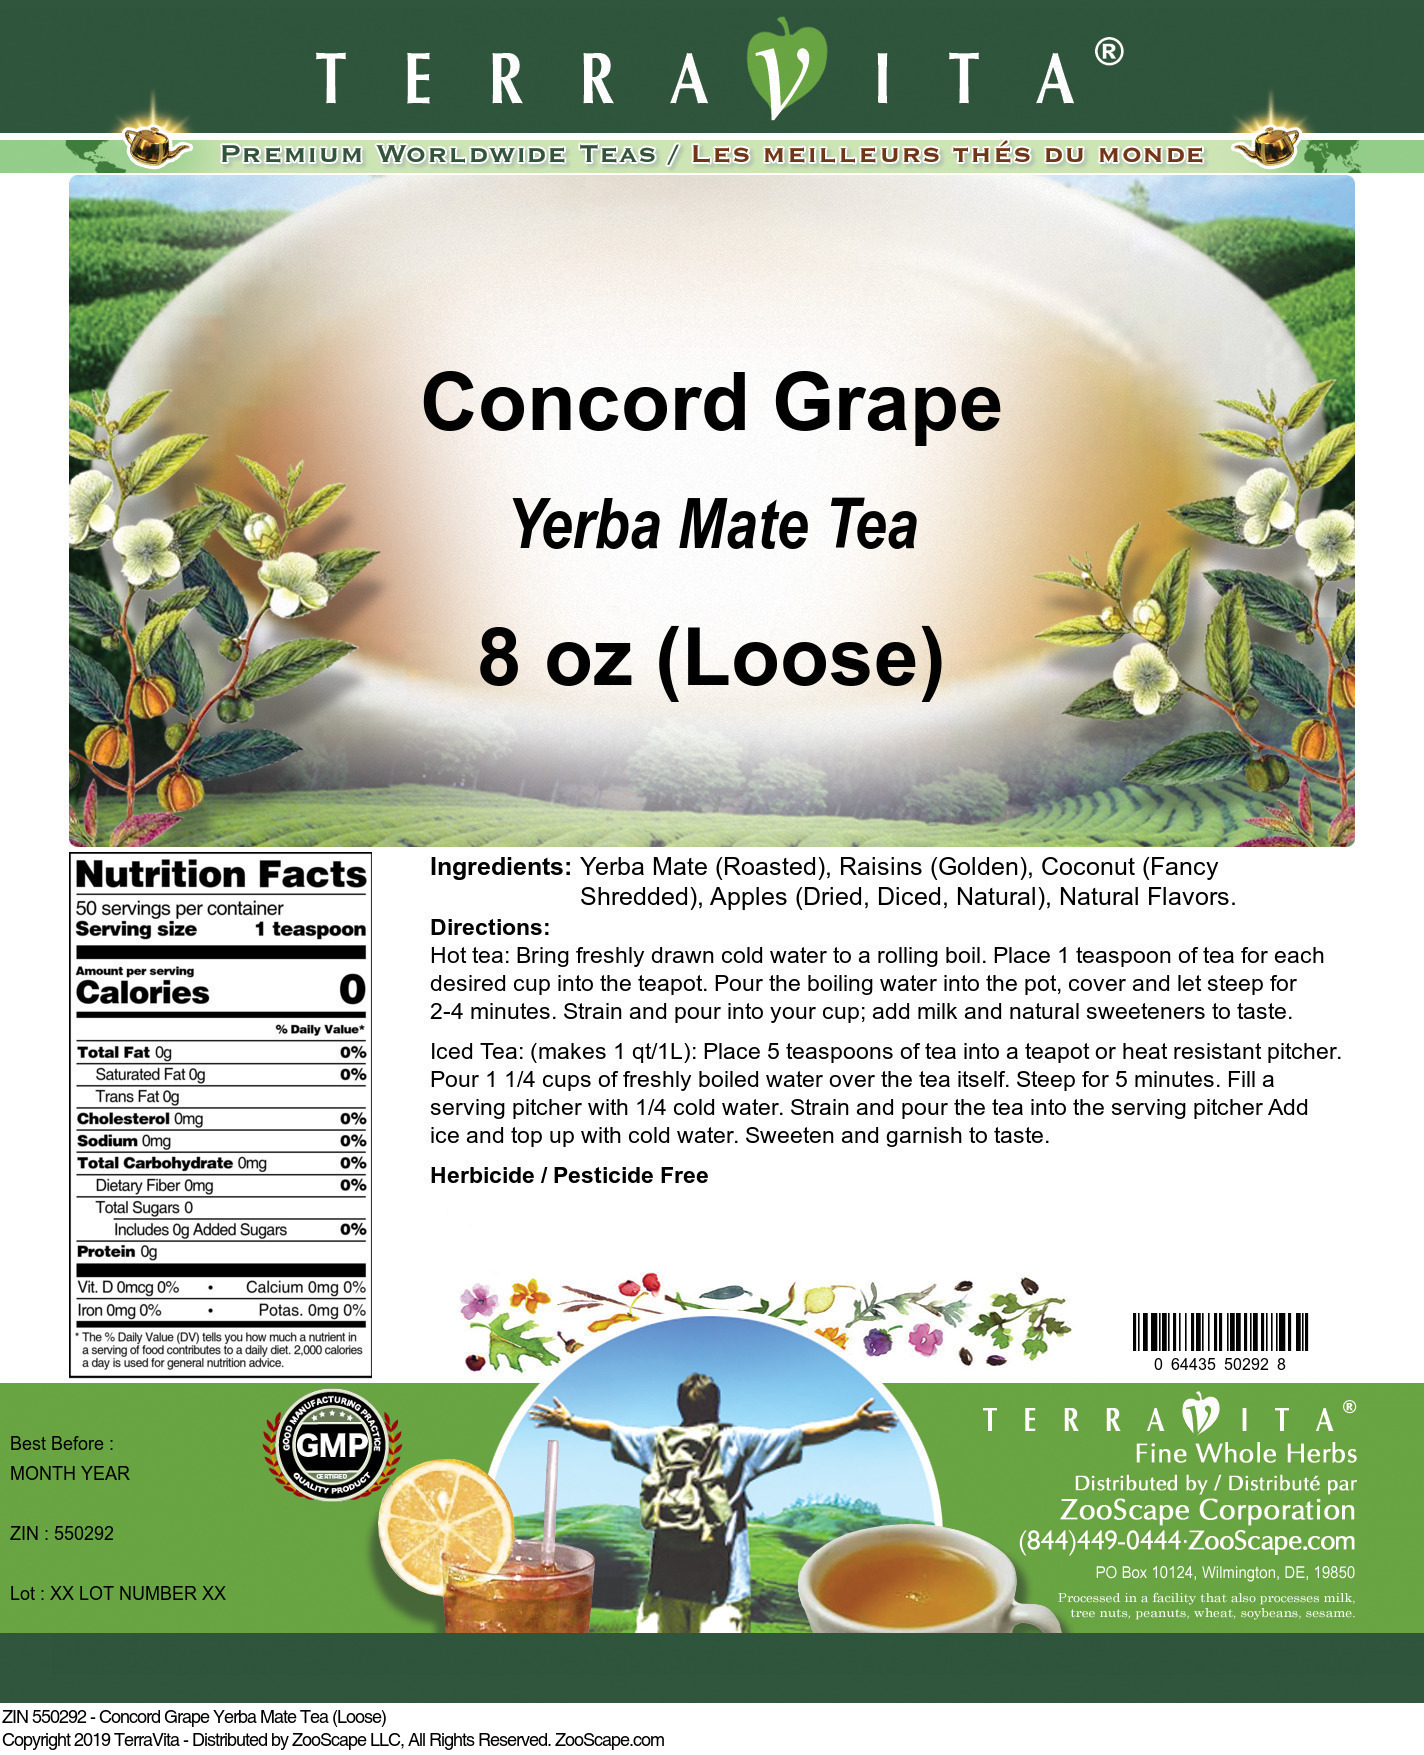 Concord Grape Yerba Mate Tea (Loose) - Label